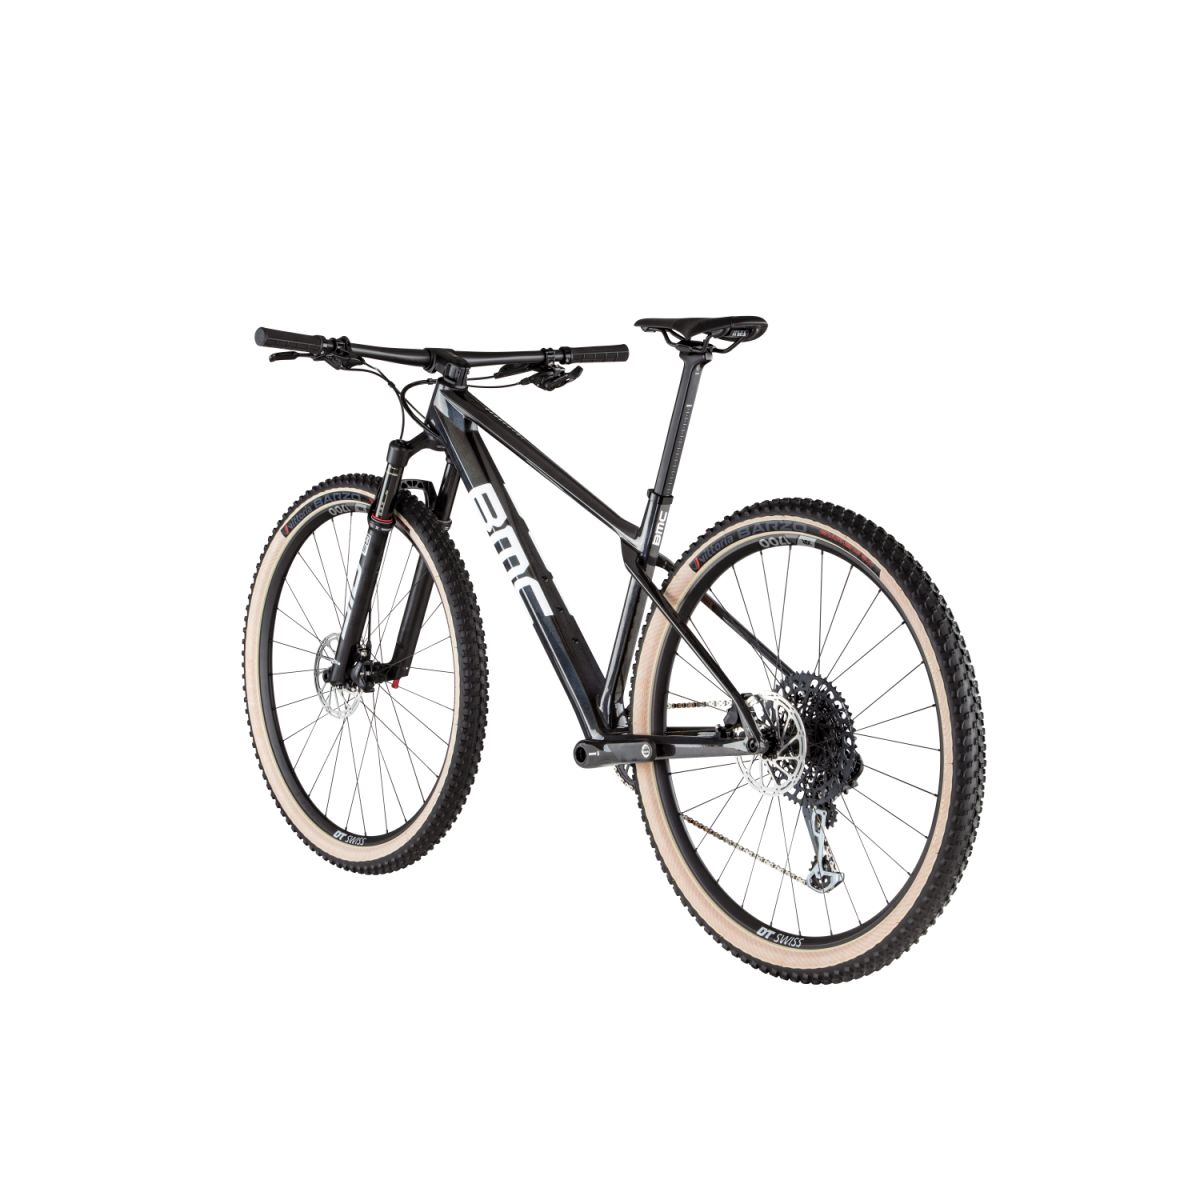 BMC Twostroke 01 Two kalnų dviratis / Anthracite Prisma - White